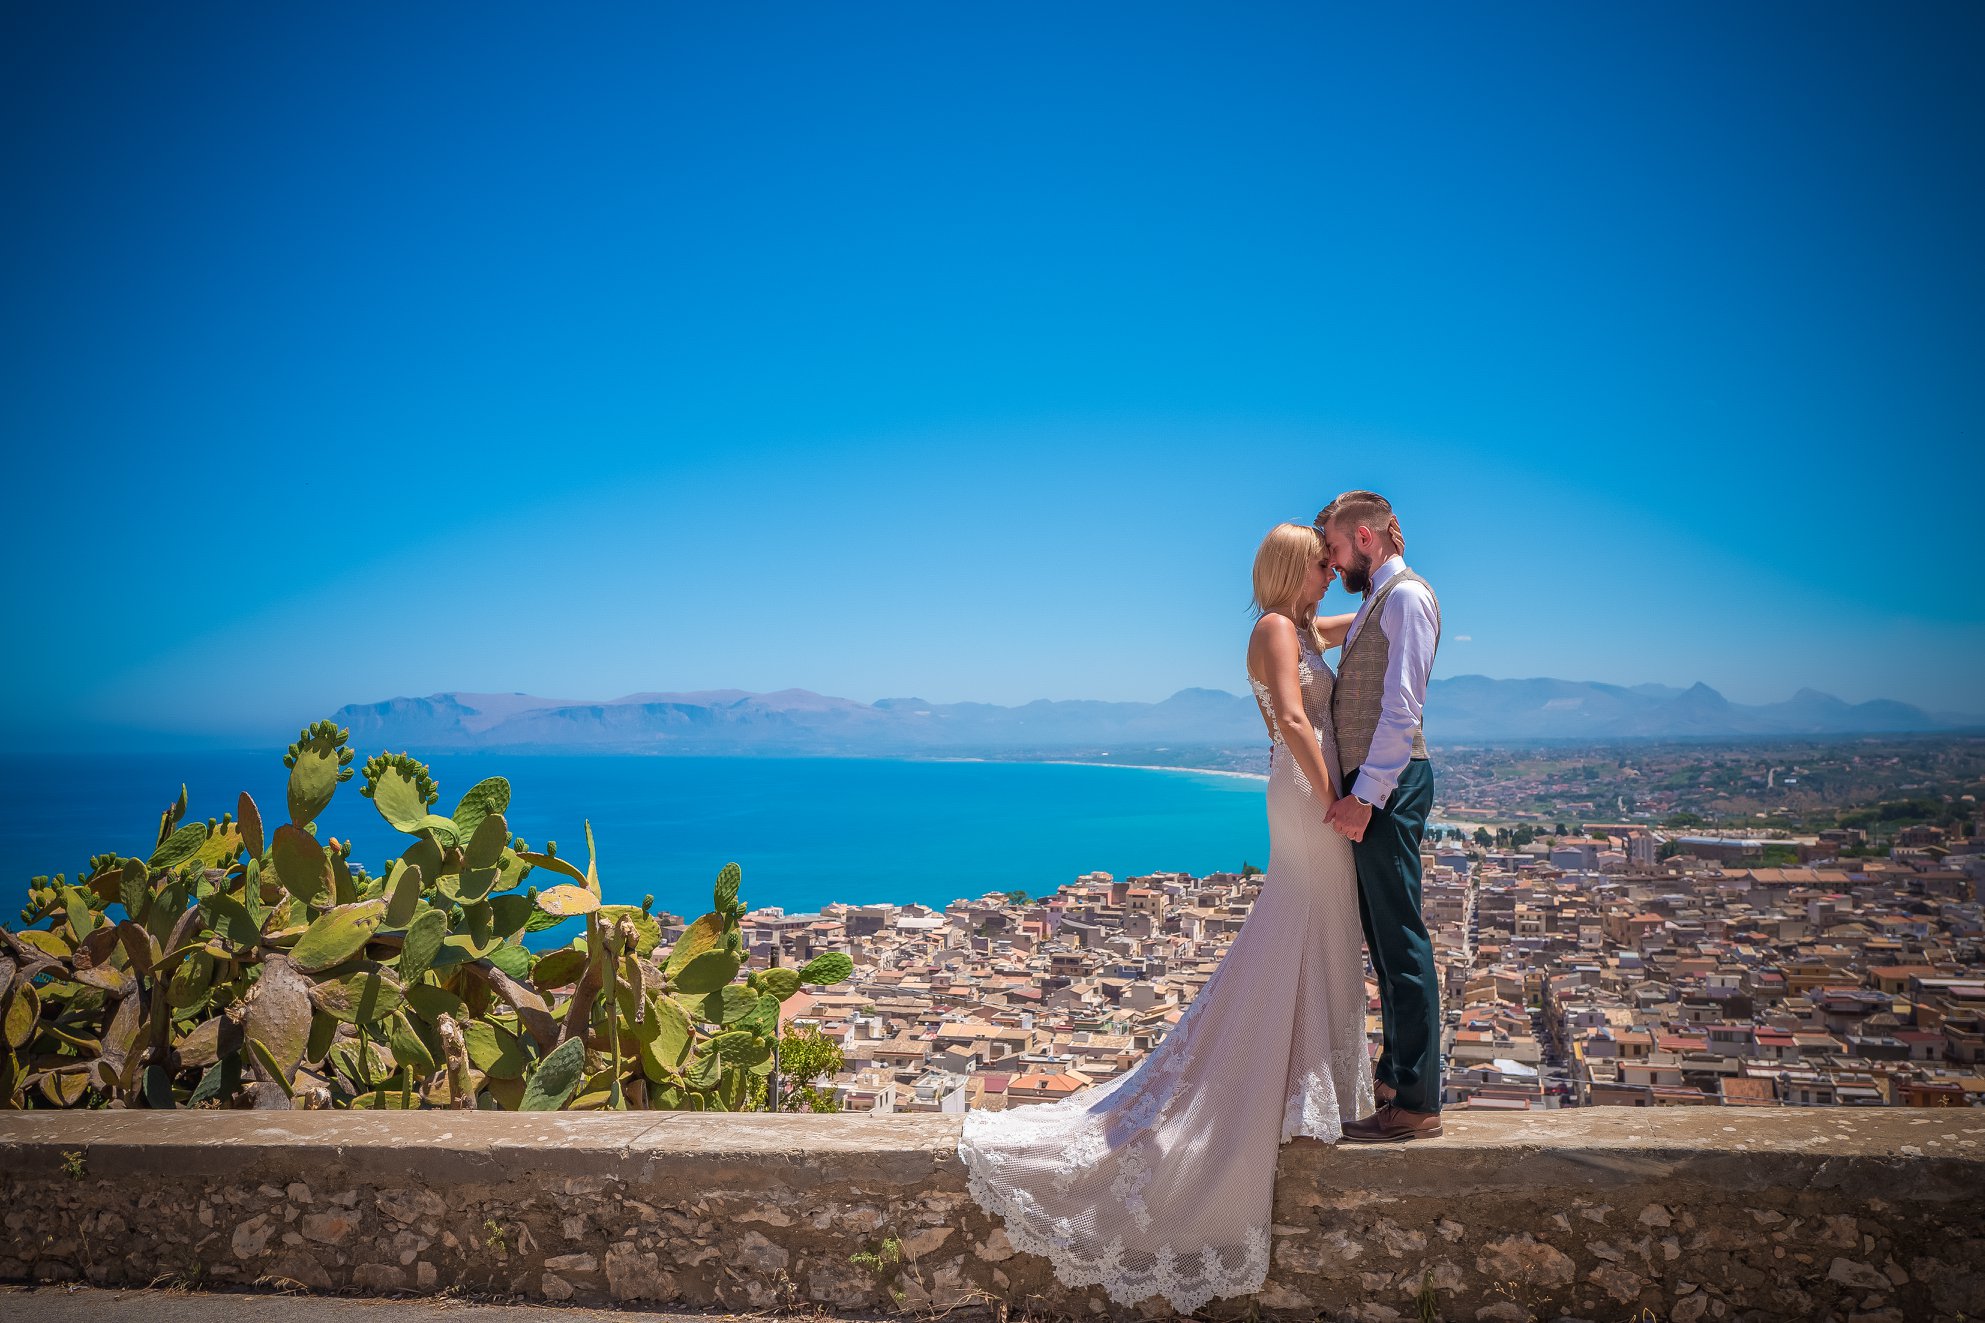 Wasze śluby — bajkowy dzień Marty i Damiana na urokliwej Sycylii!